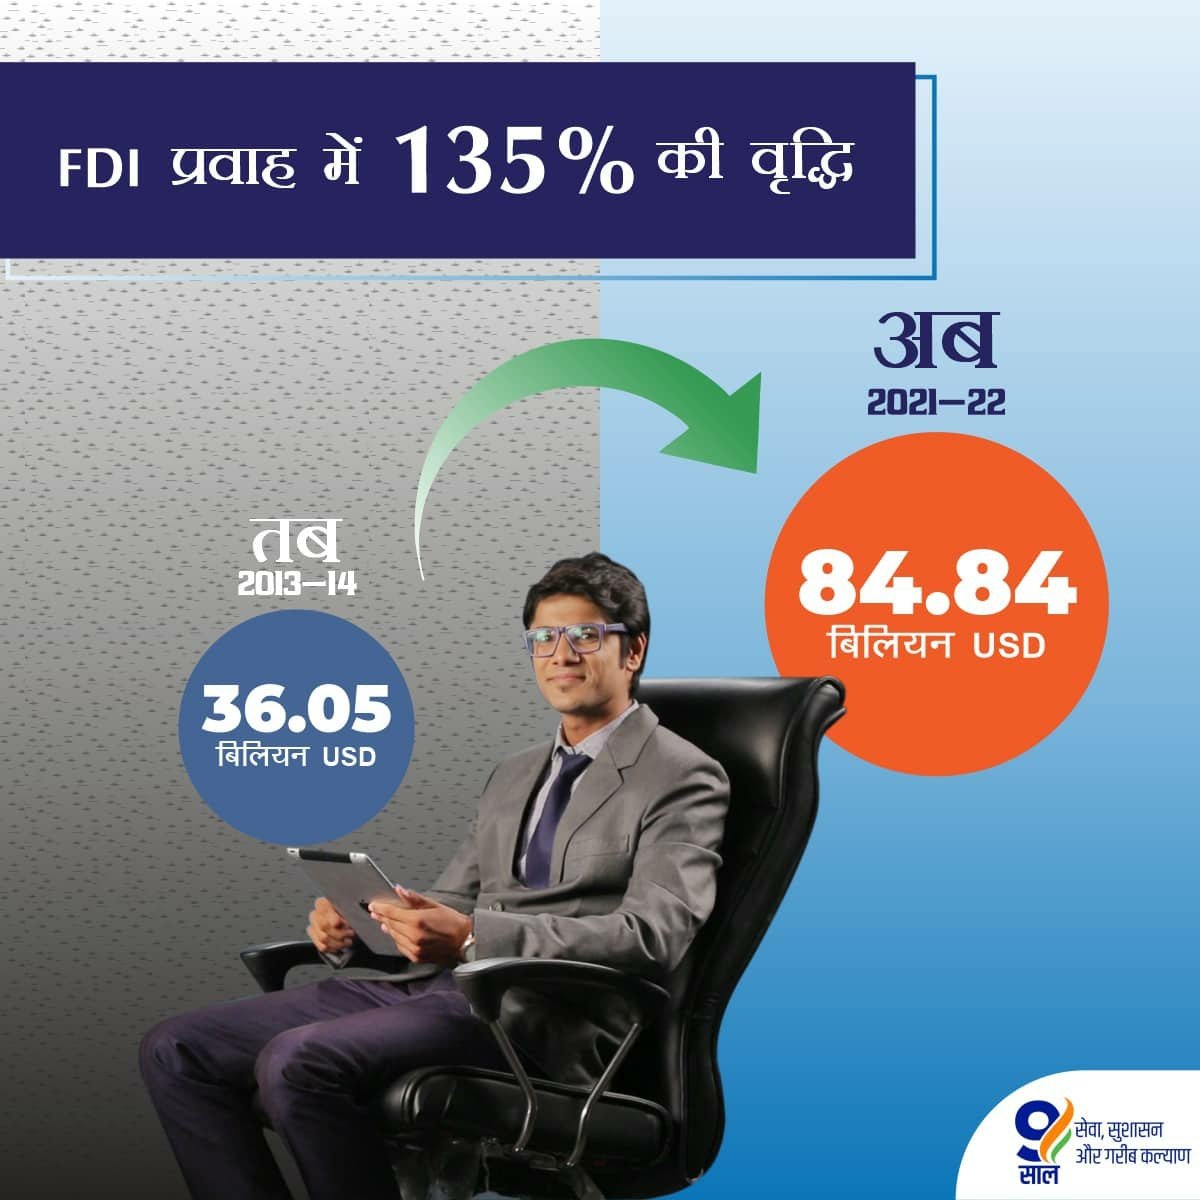 lFDI प्रवाह में 135% की वृद्धि
narendramodi.in/category/infog…
via NaMo App